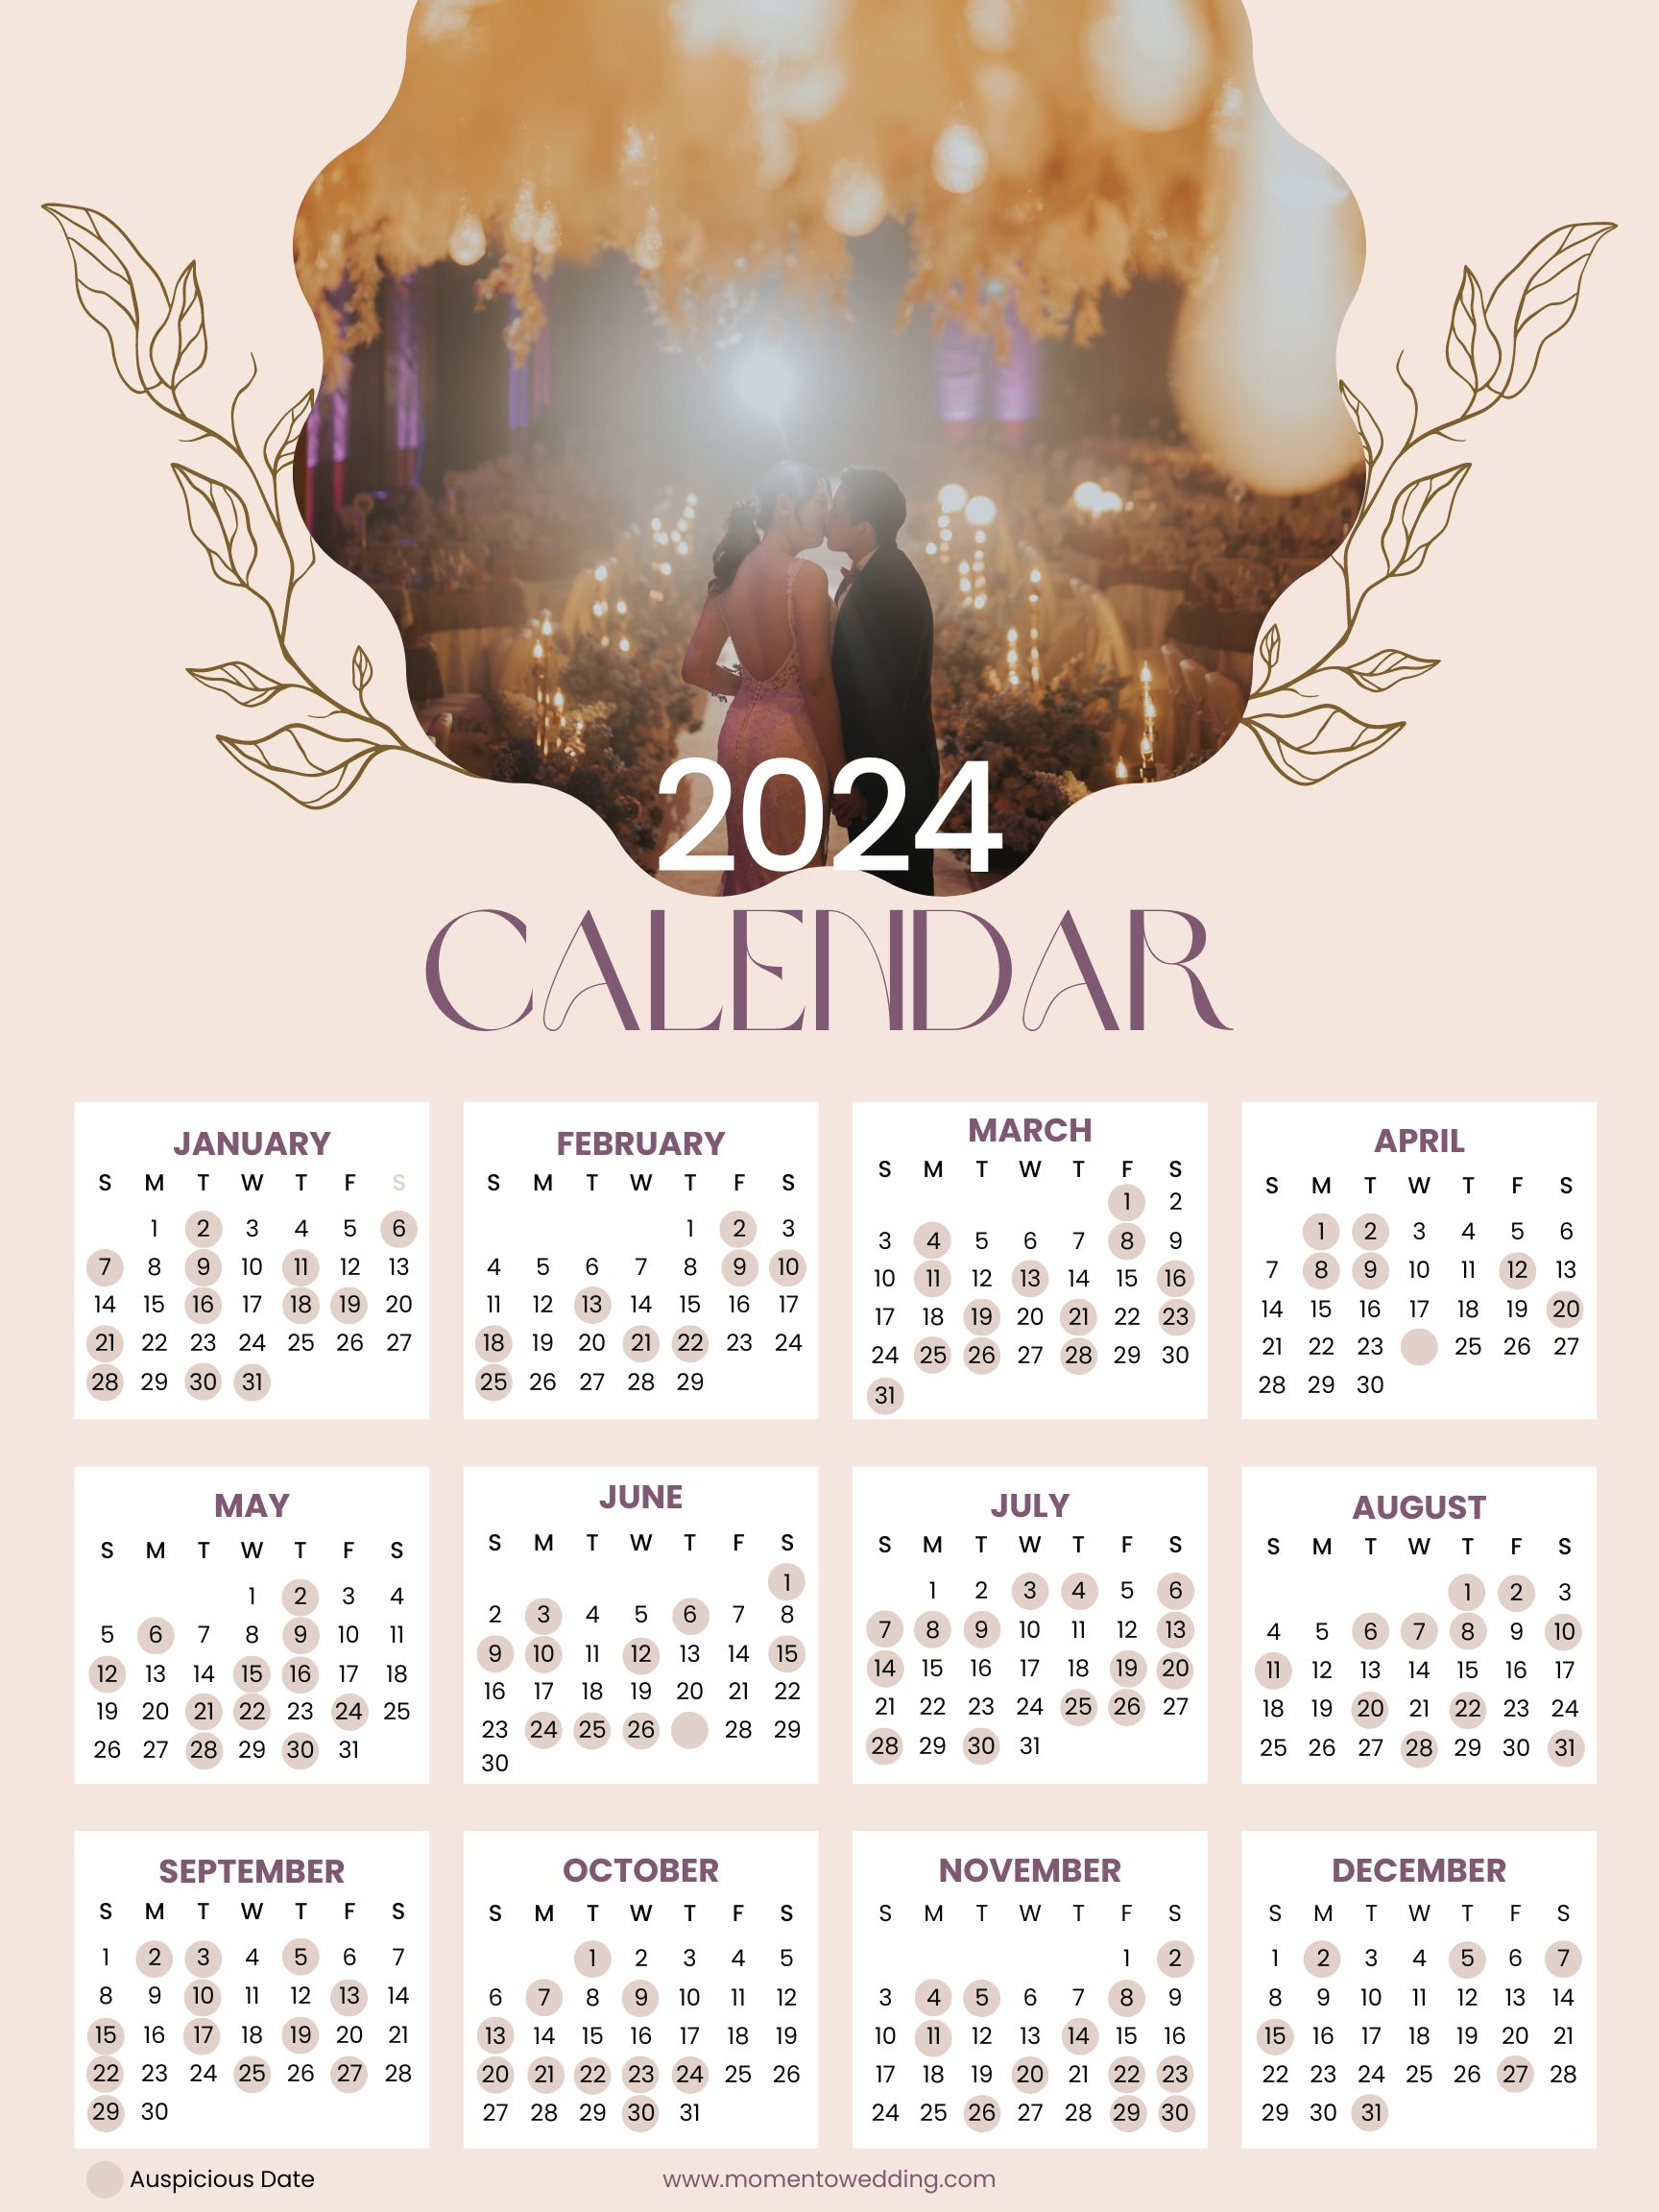 Auspicious Wedding Dates in 2024